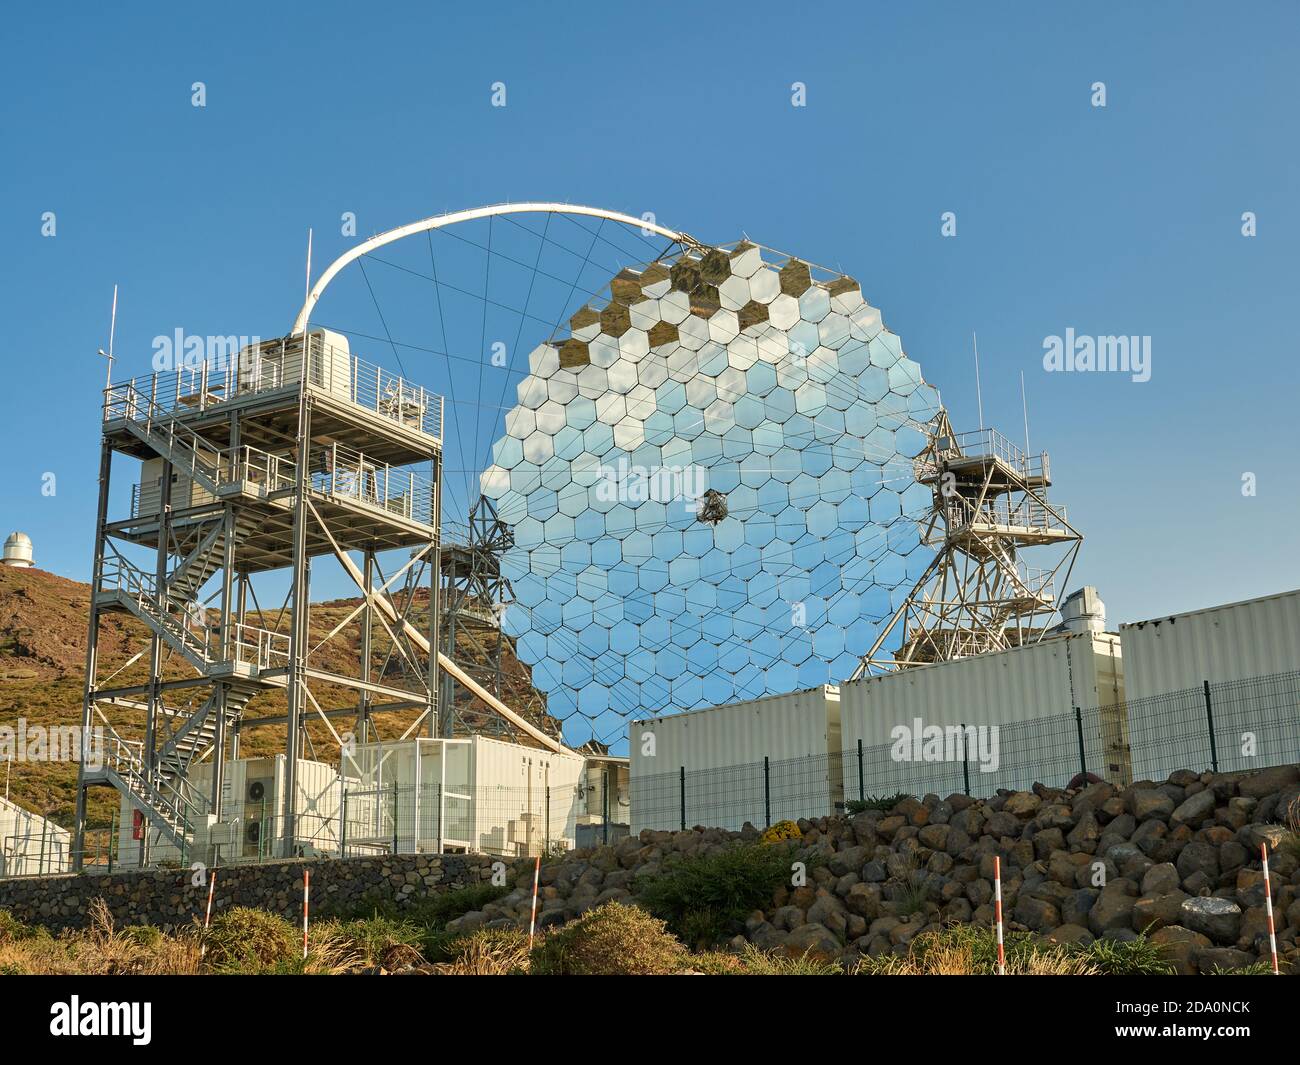 Vari telescopi moderni, tra cui MAGIC o Major Atmospheric gamma Imaging Cherenkov Telescopio situato sul pendio della collina all'osservatorio astronomico sopra Foto Stock